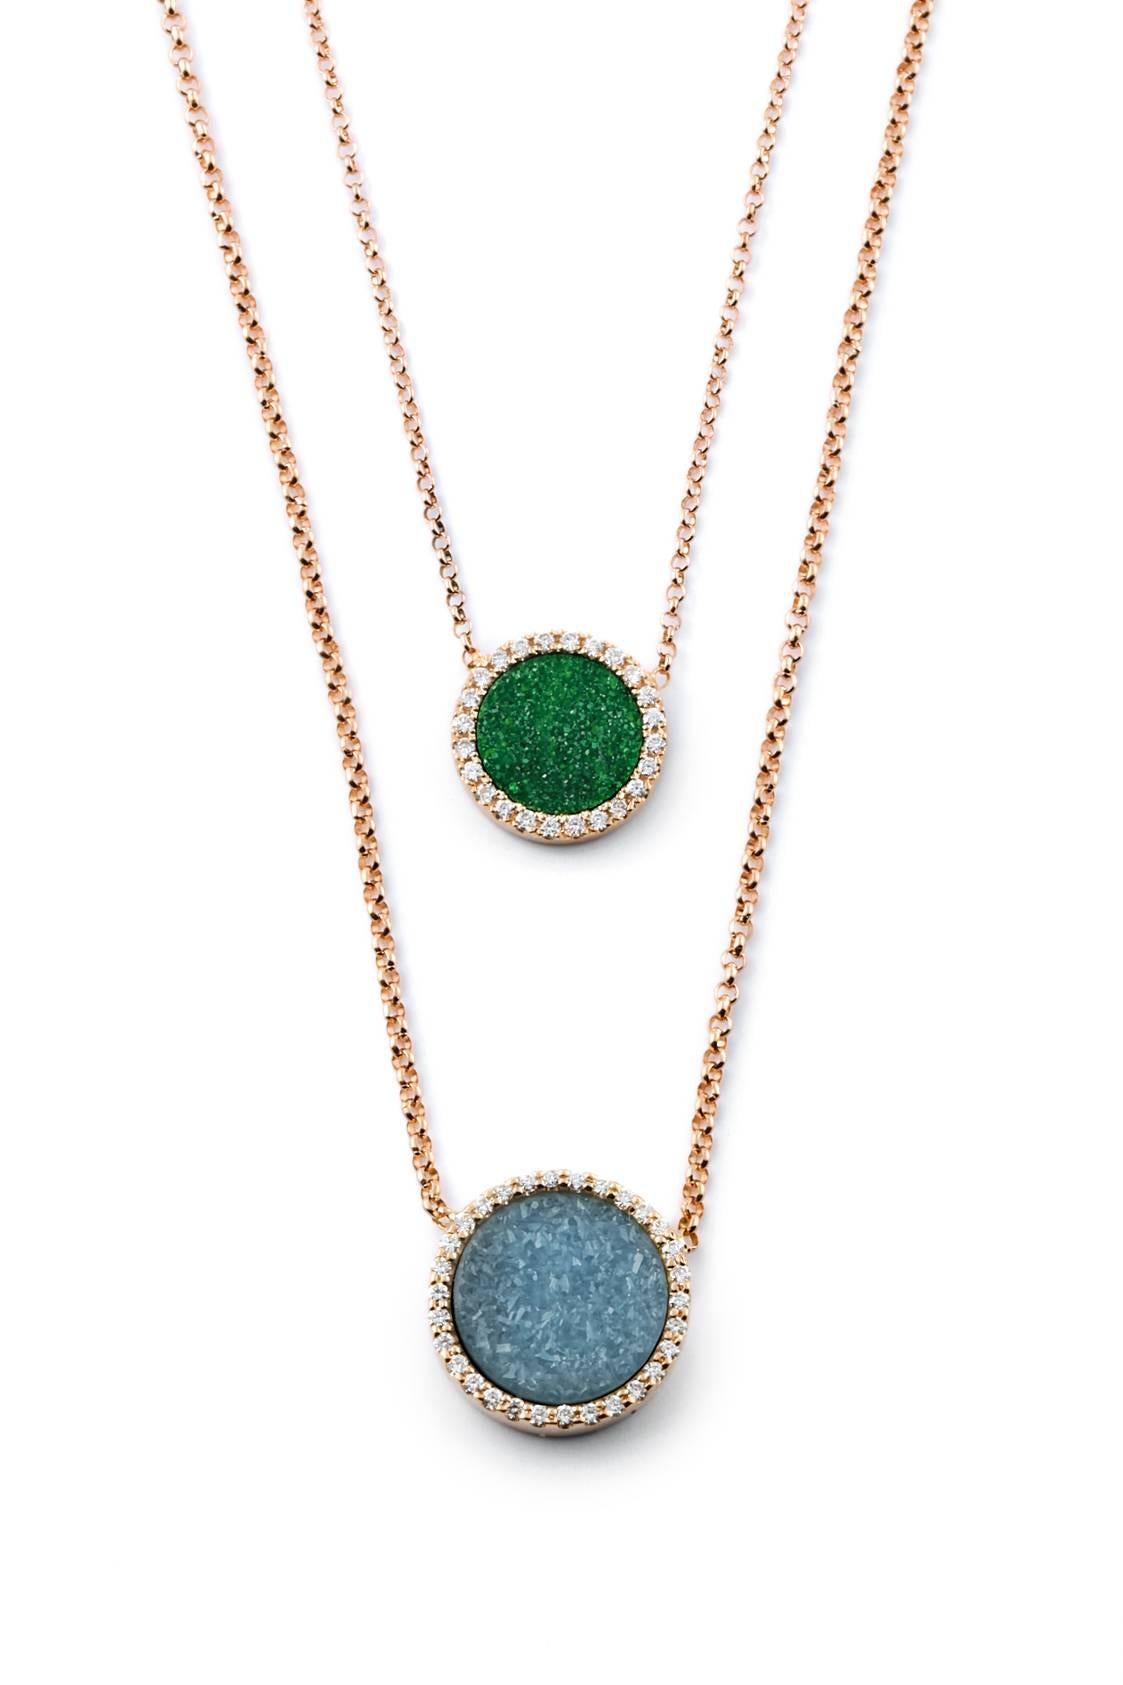 Contemporary Karolin Rose Gold White Diamond Pendant Green Uvarovite Necklace